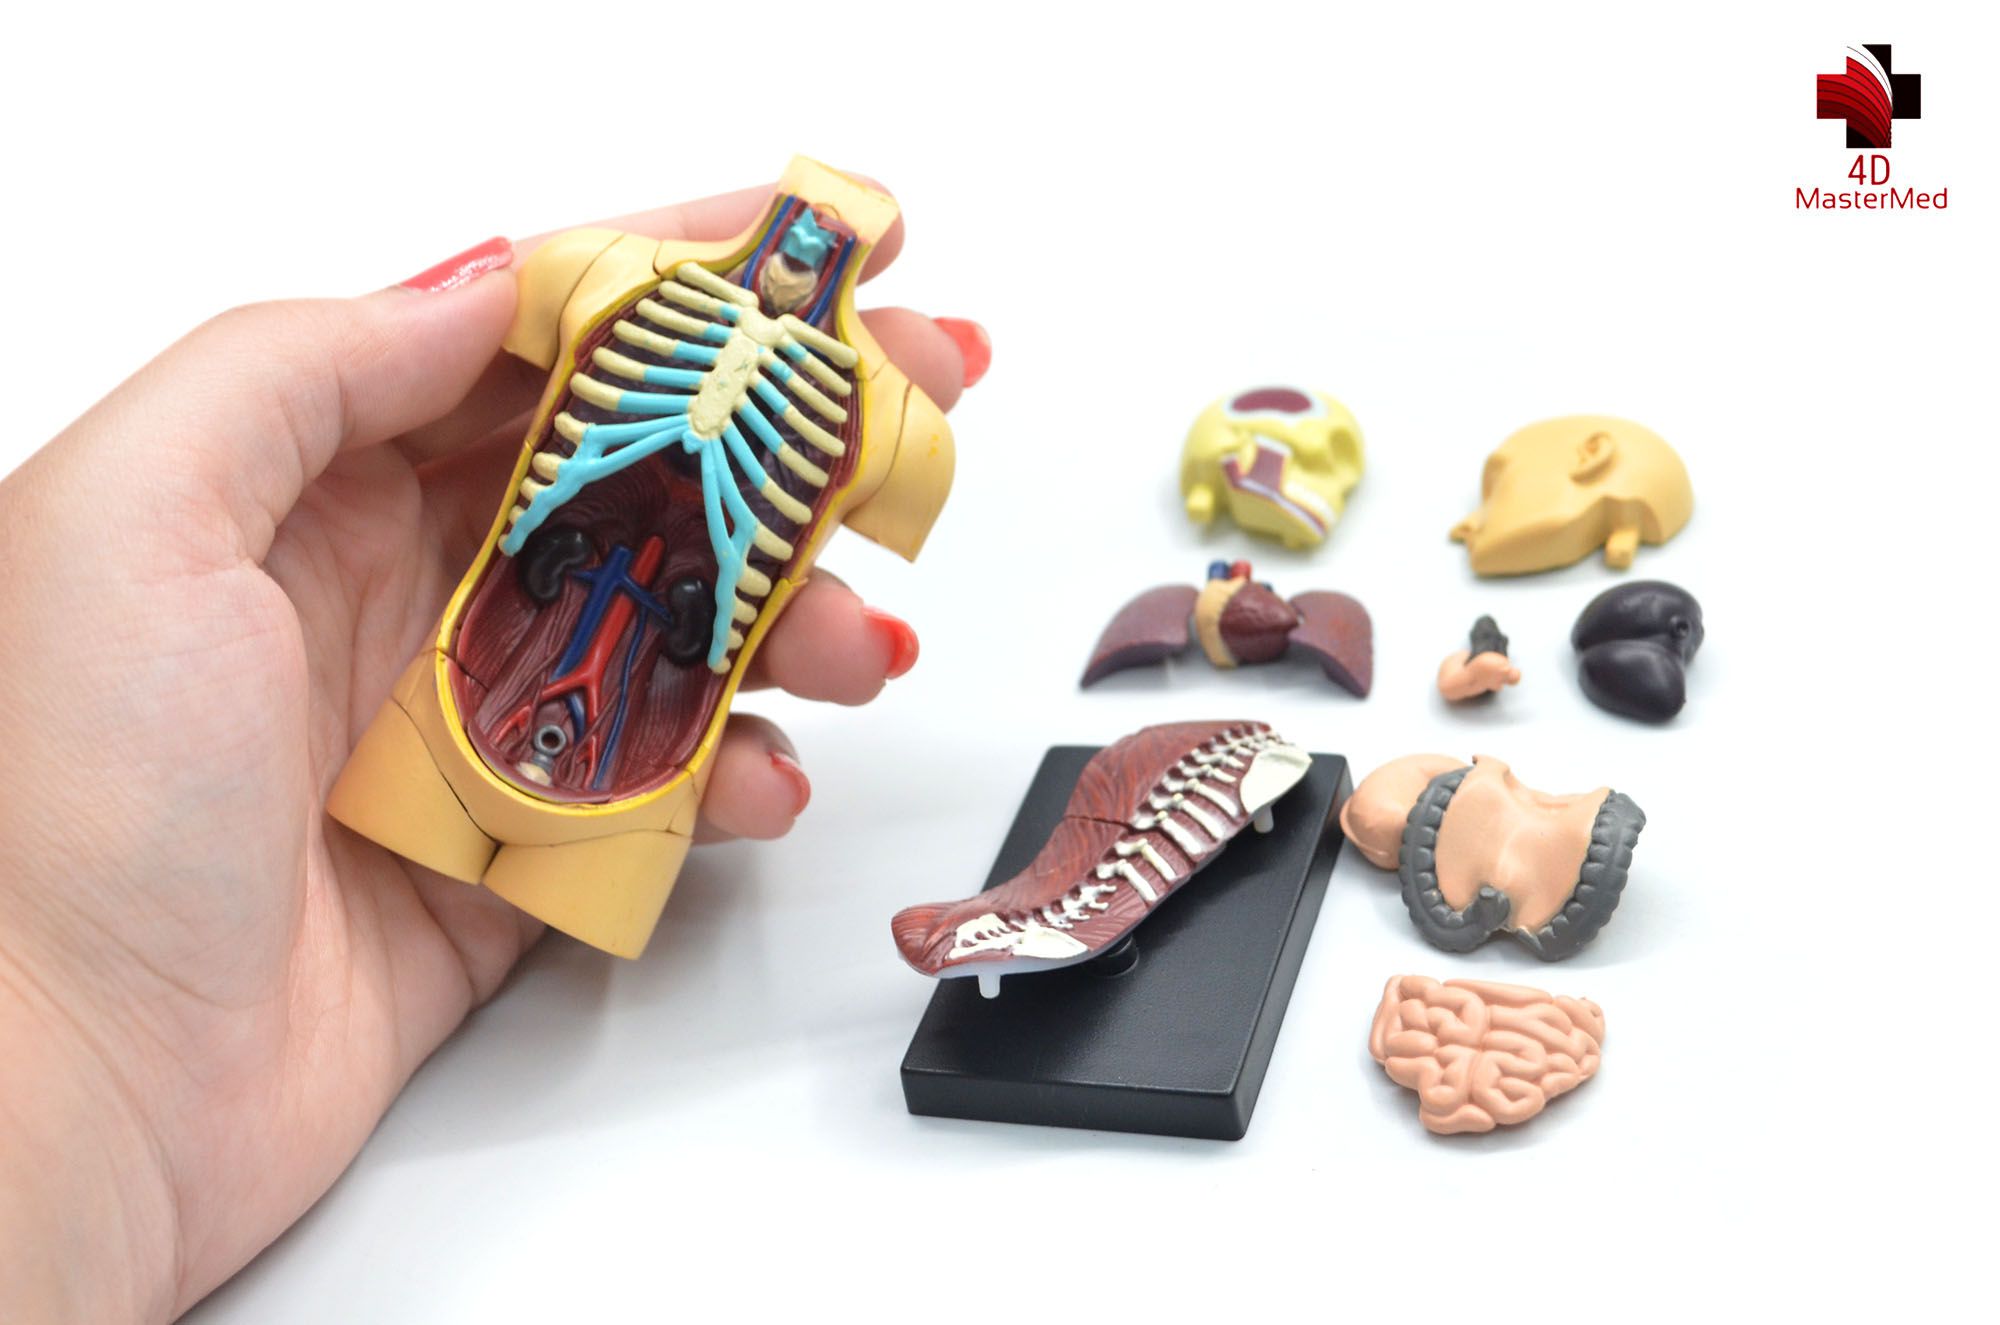 Anatomia do Torso Humano  - 4D MasterMed